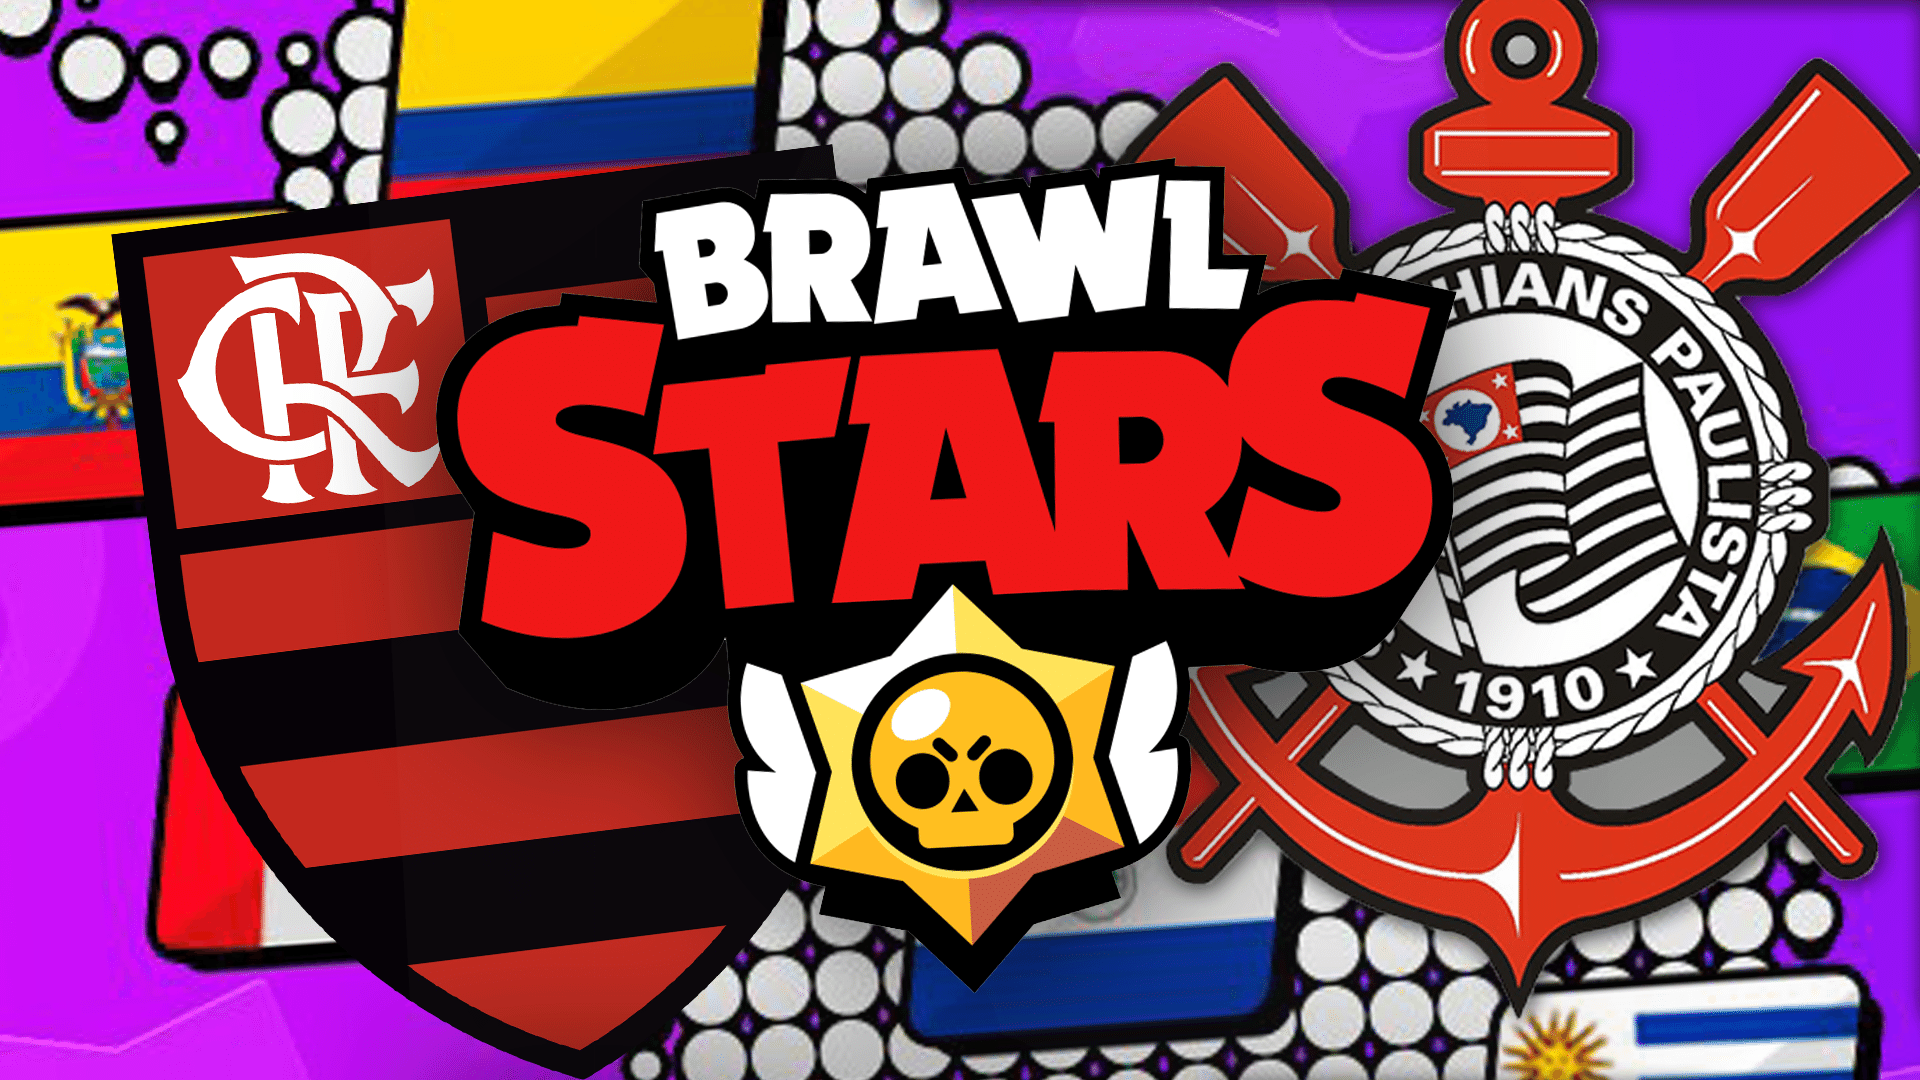 Corinthians E Flamengo Disputam Brawl Stars Master League Veja Times - brawl stars minha conta